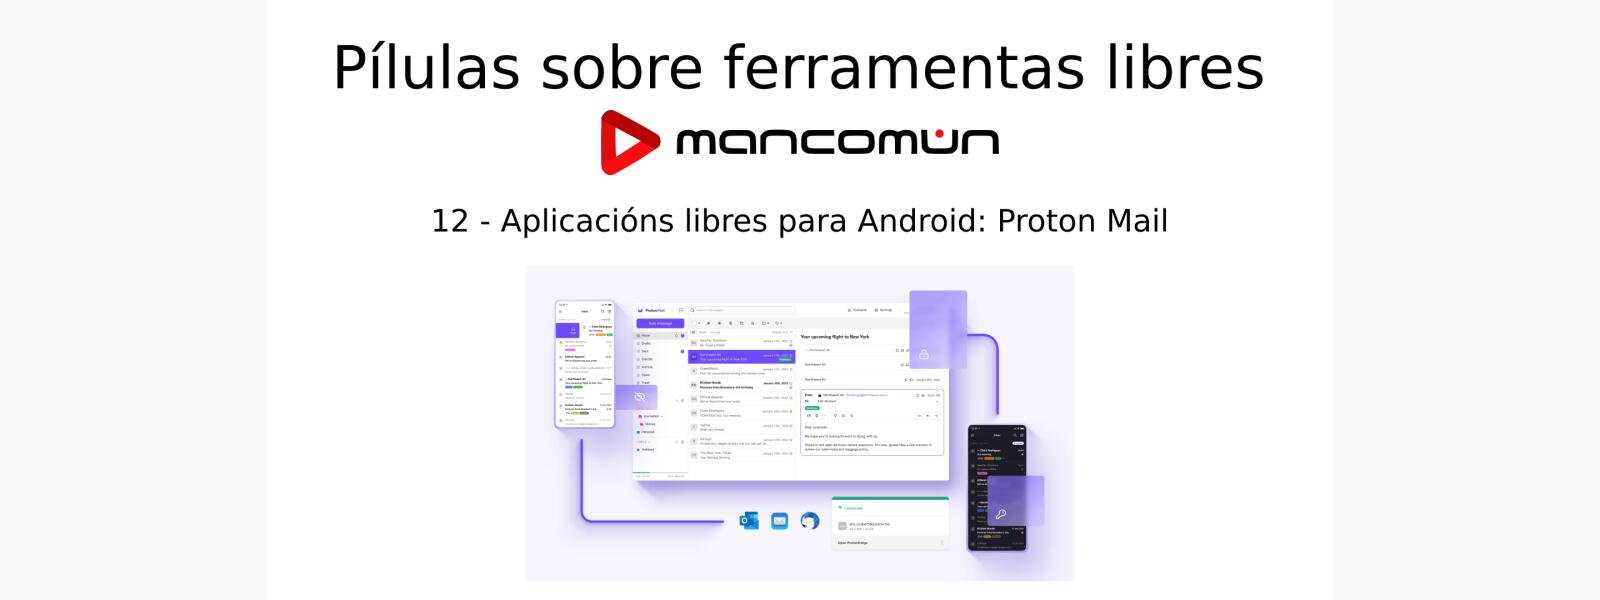 Aplicacións libres para Android: Proton Mail, correo electrónico